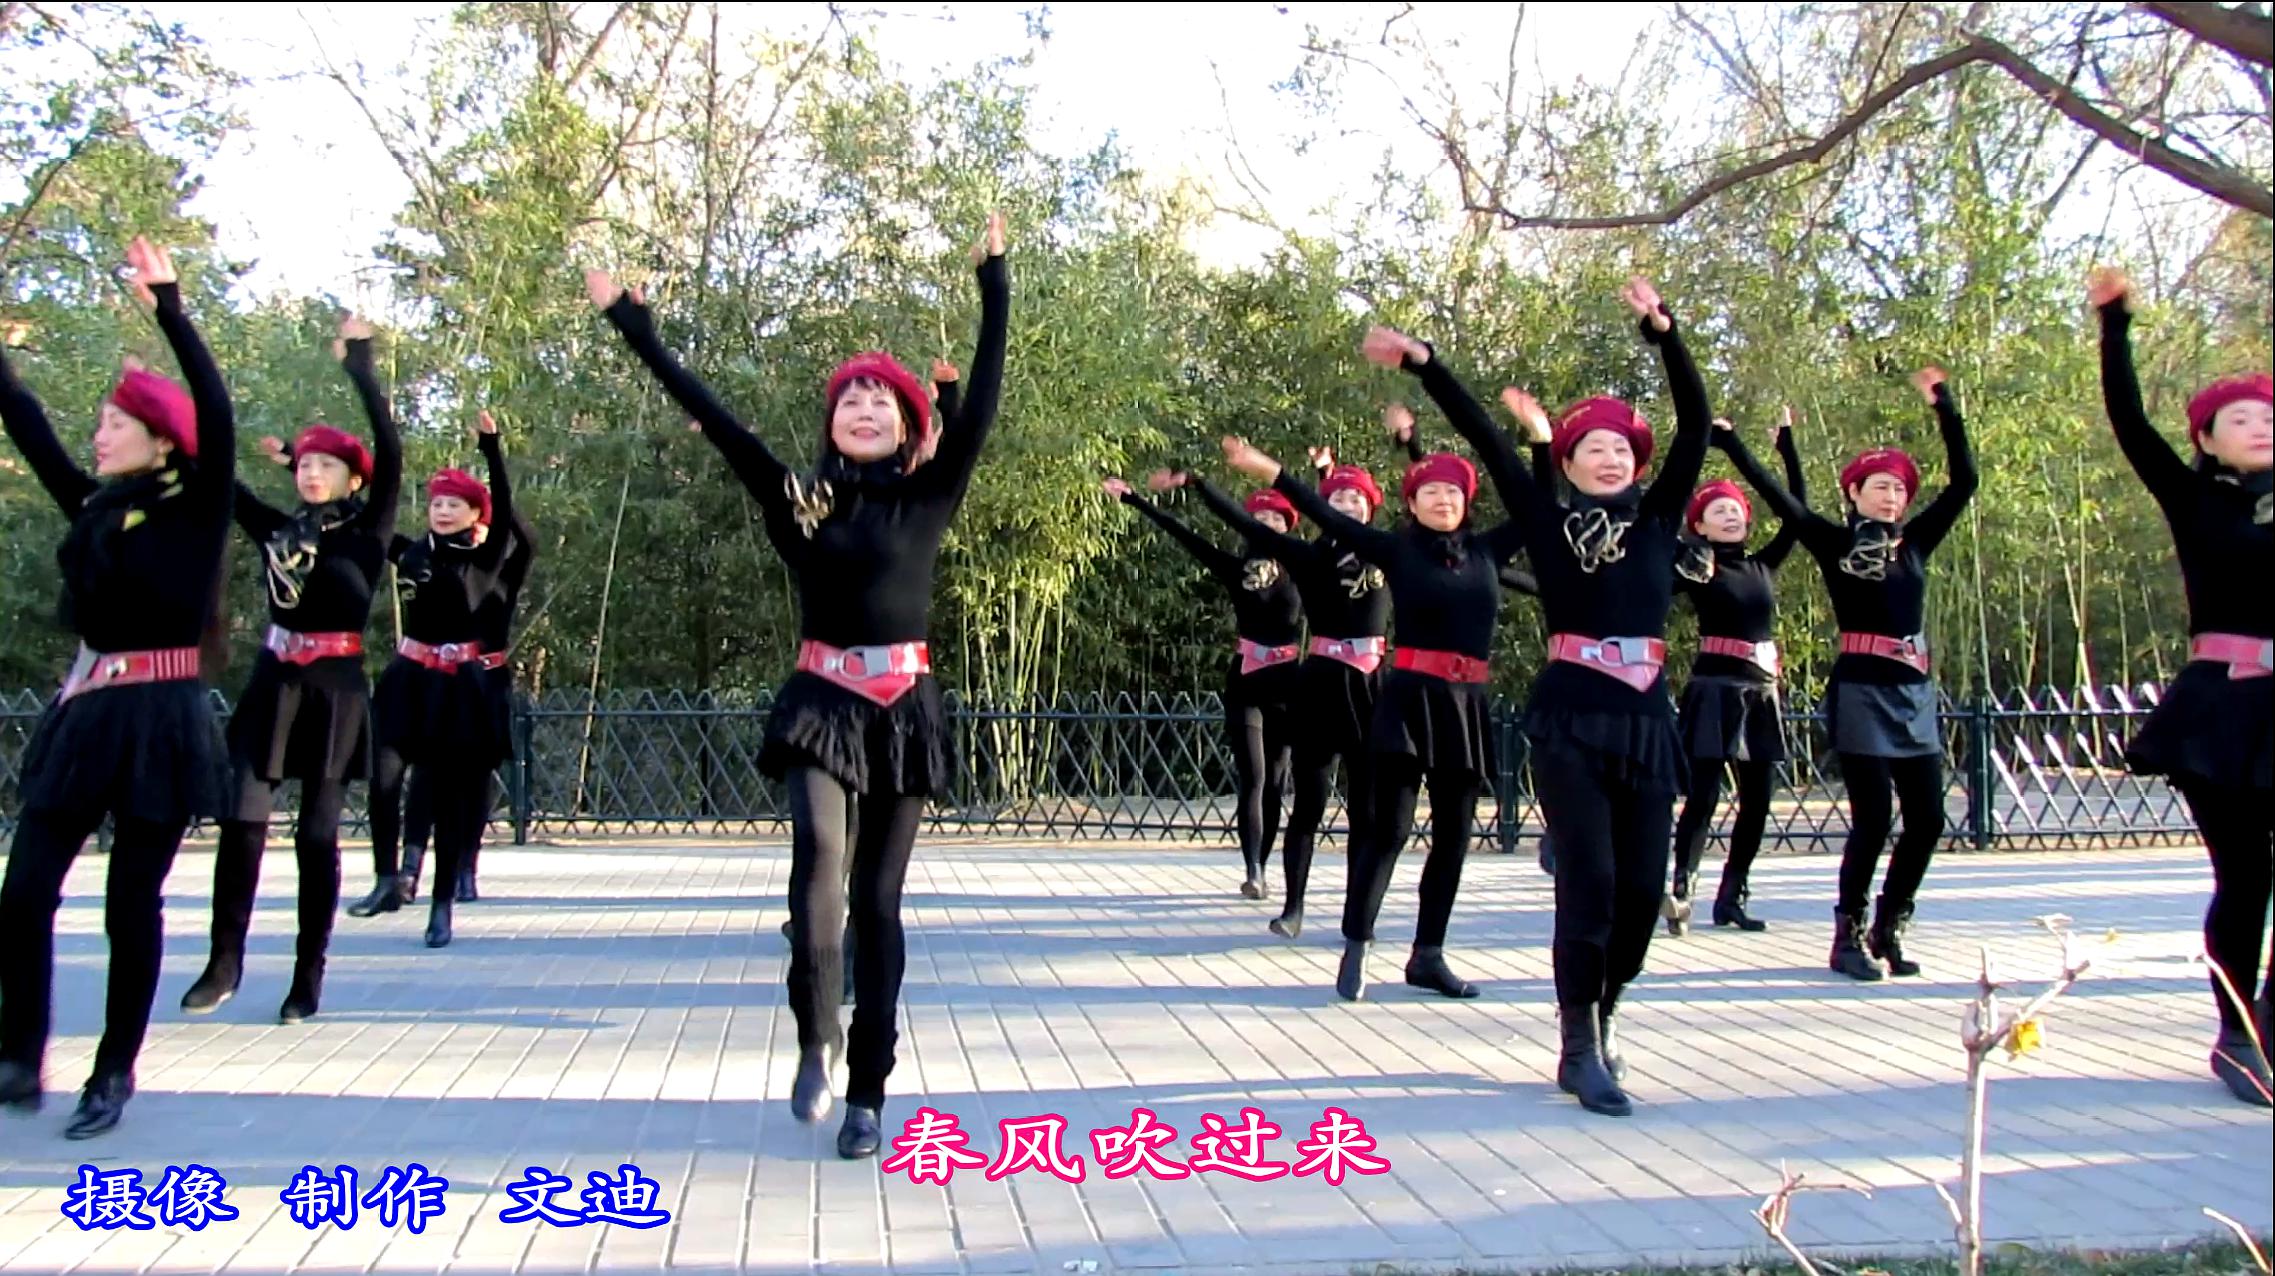 紫竹院广场舞《舞动中国》,阵容强大,气势如虹,活力四射!